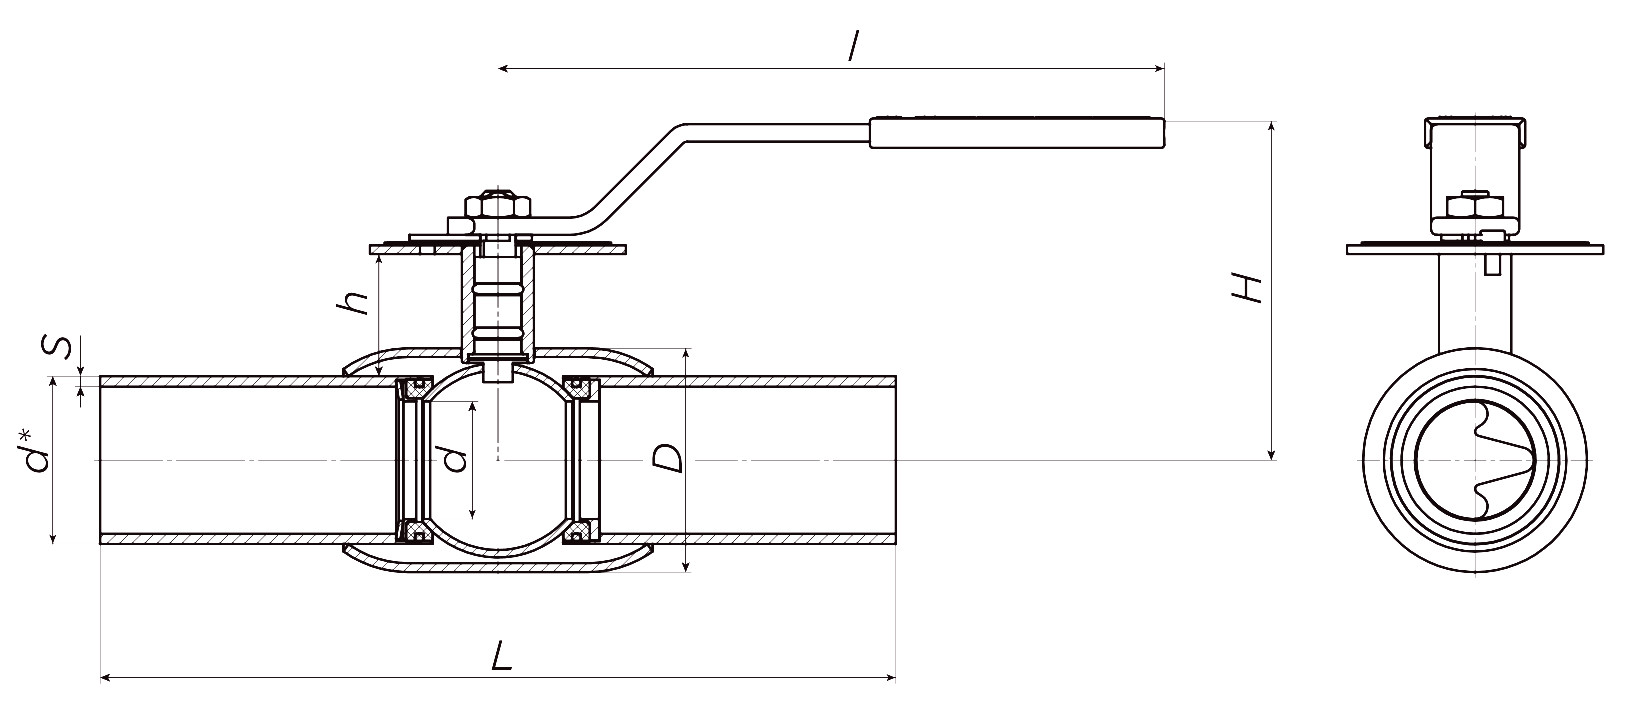 Кран шаровой ALSO КШ.П.BV.080.25-02 Ду80 Ру25 стандартнопроходной, присоединение - под приварку, корпус - сталь 09Г2С, уплотнение - PTFE, управление - ручка-рычаг